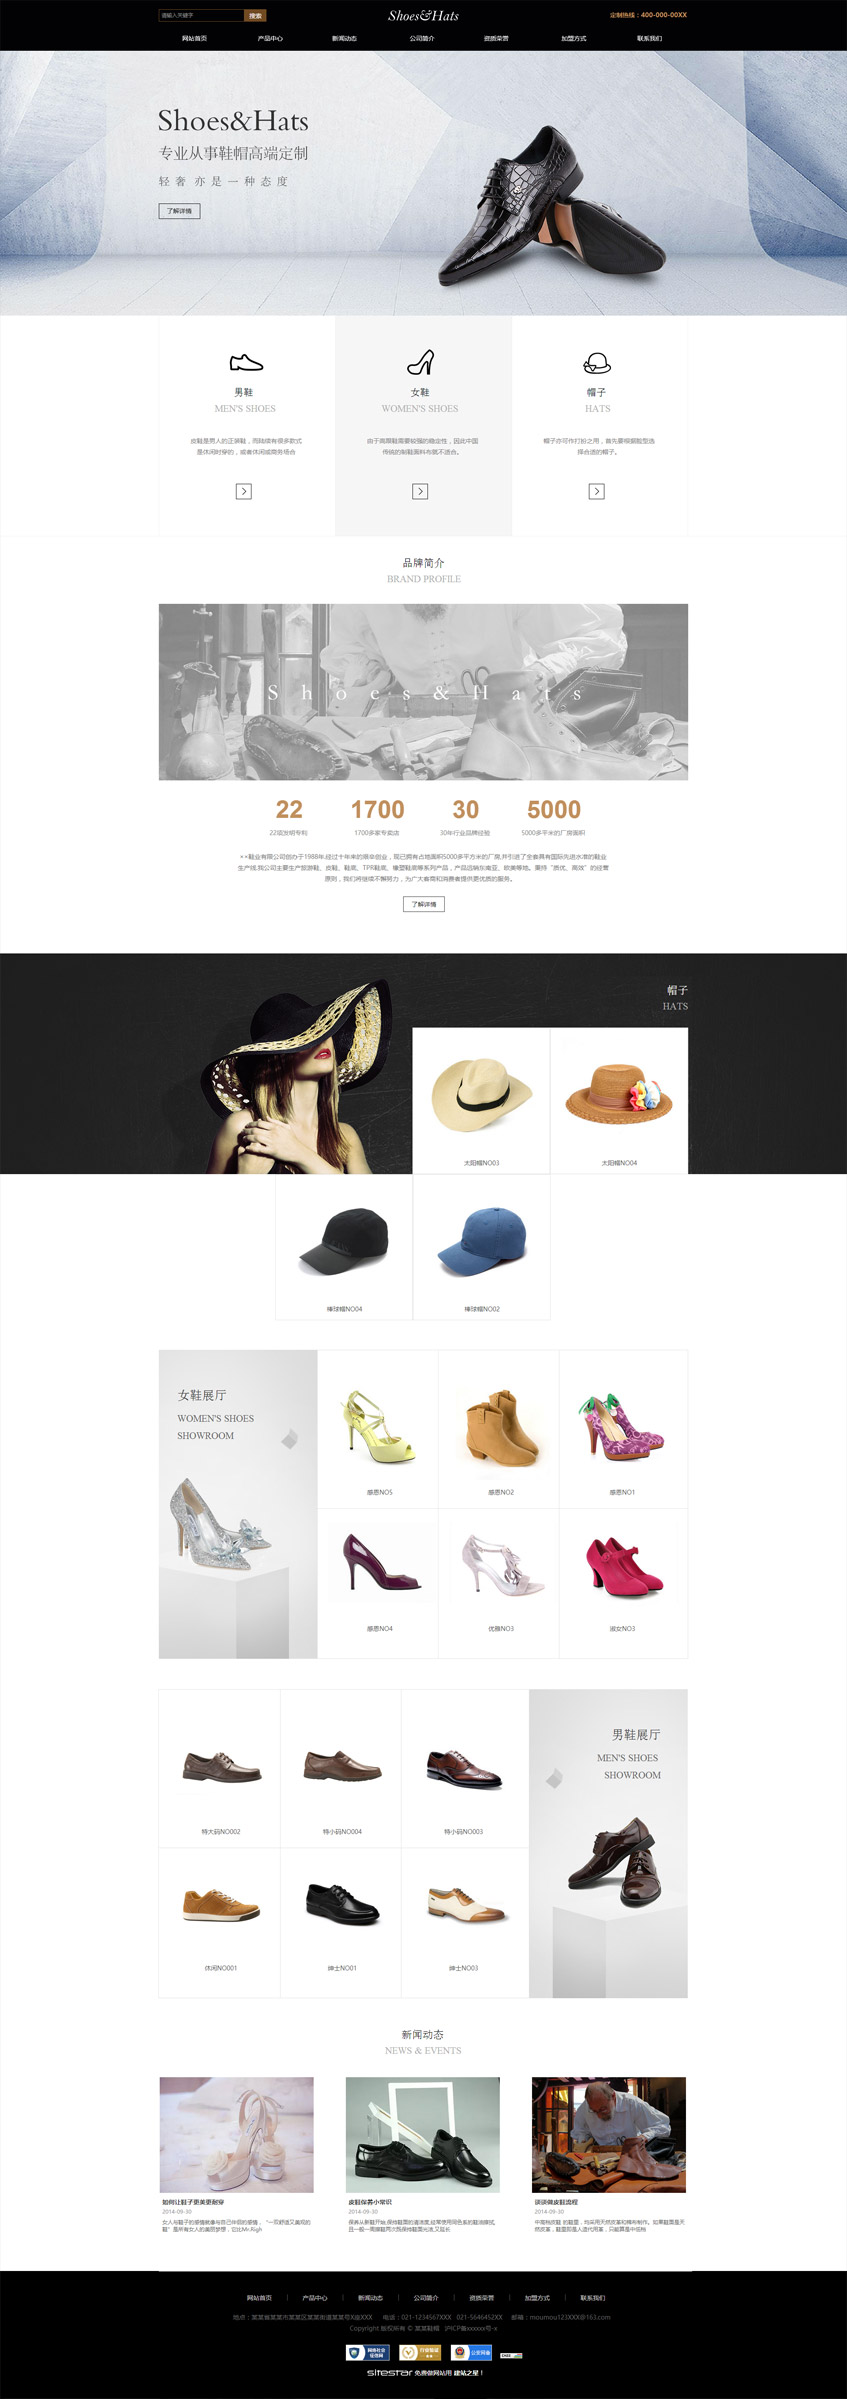 企业网站精美模板-shoes-366